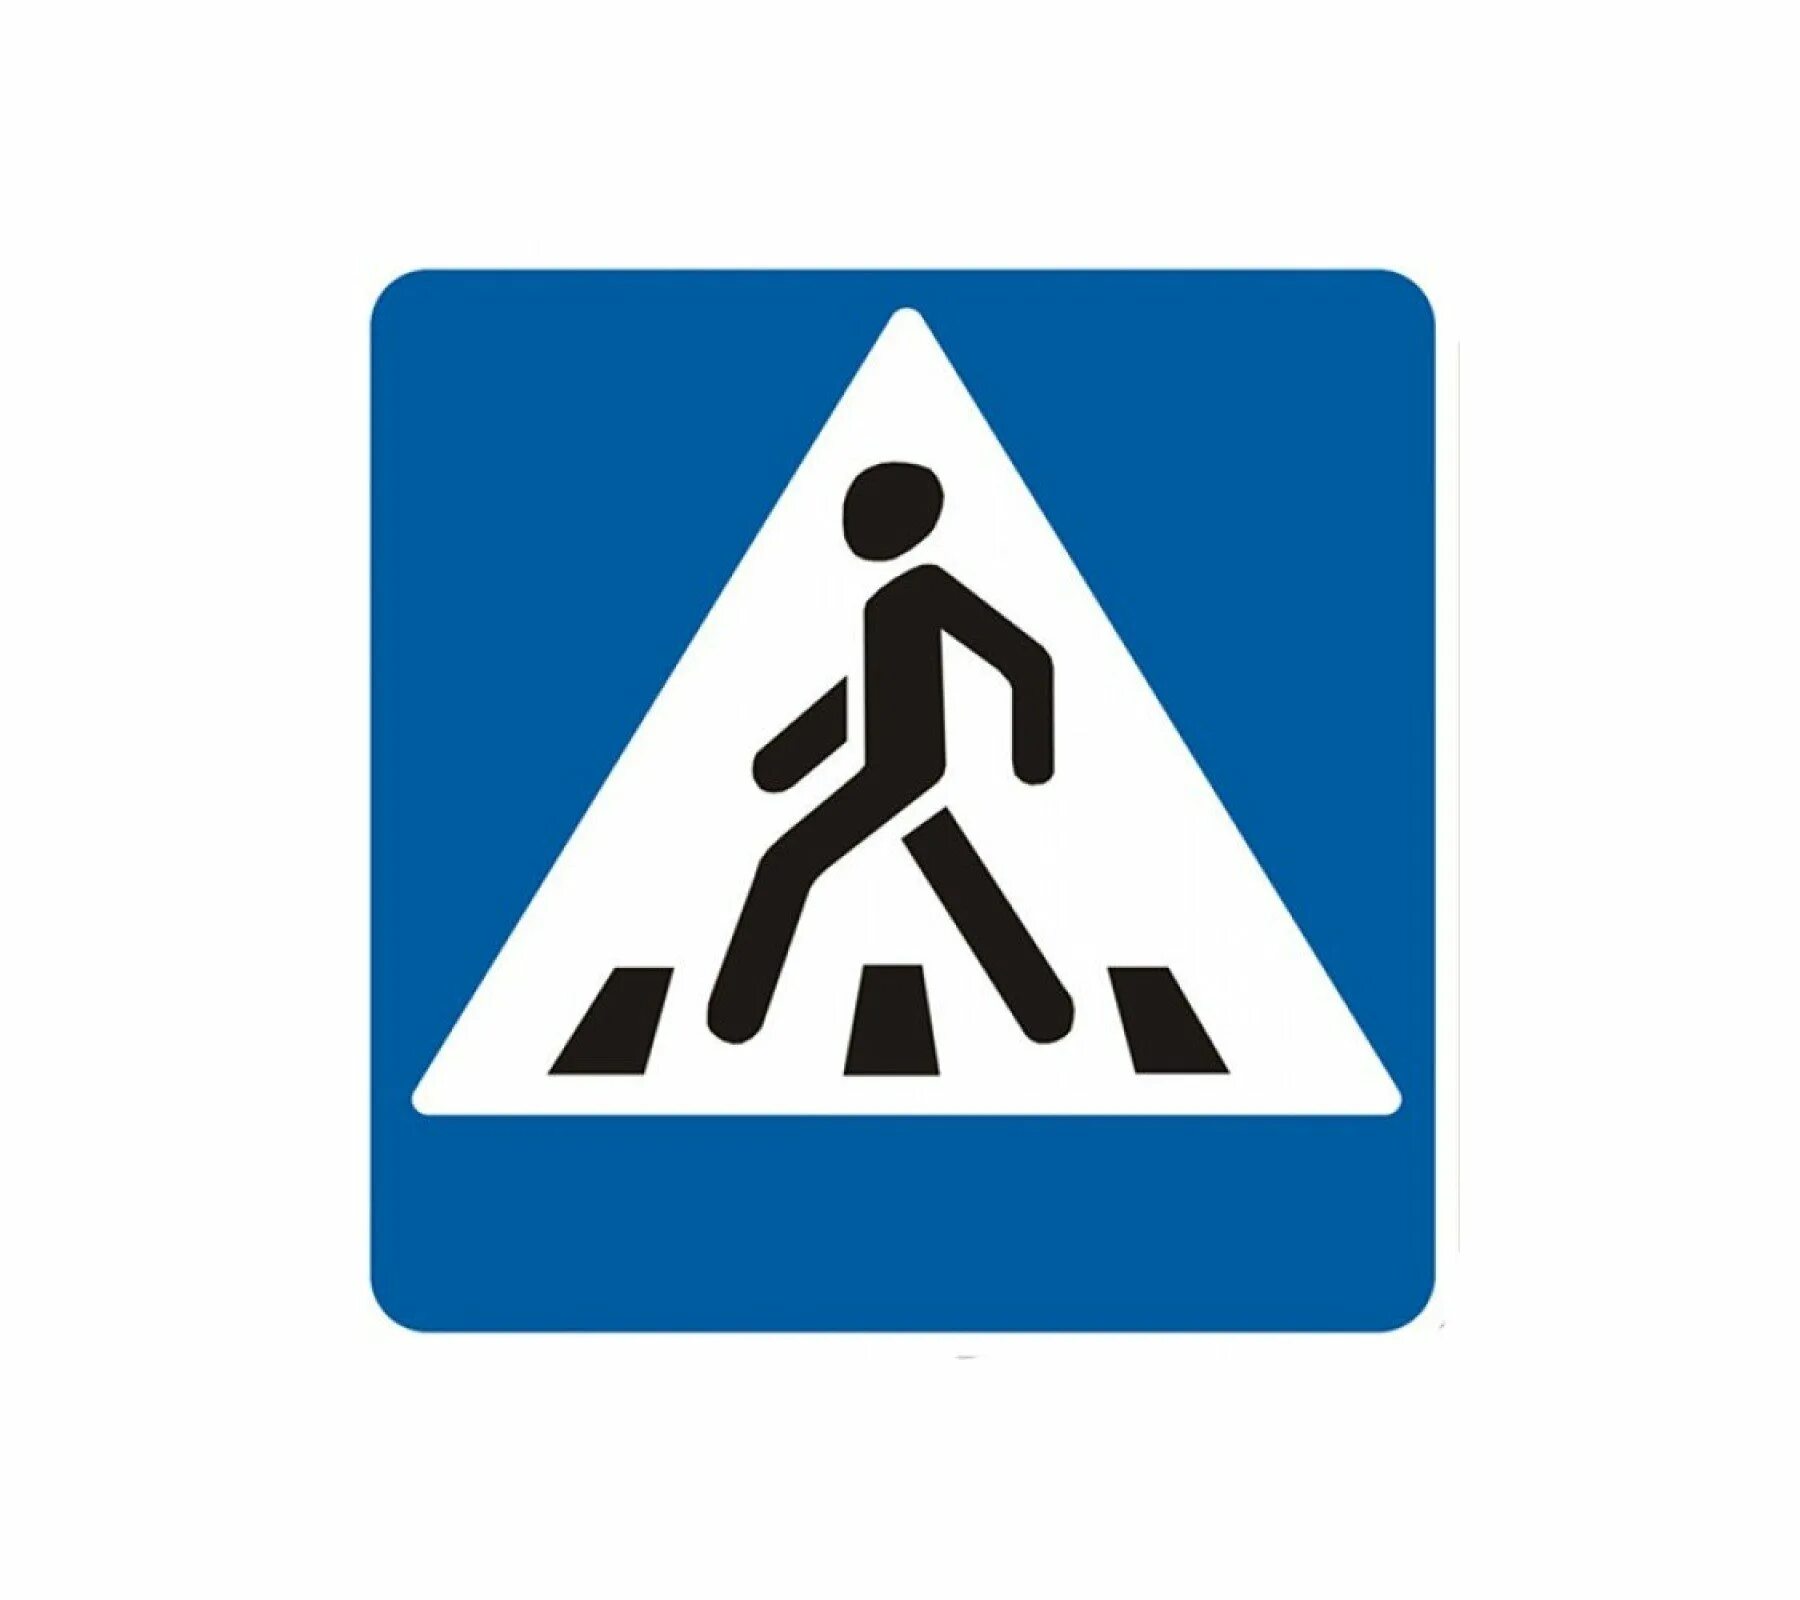 Знак пешеходный переход Беларусь. Дорожный знак пешеходный переход. Знак 5.16.2. Значок переходного перехода.